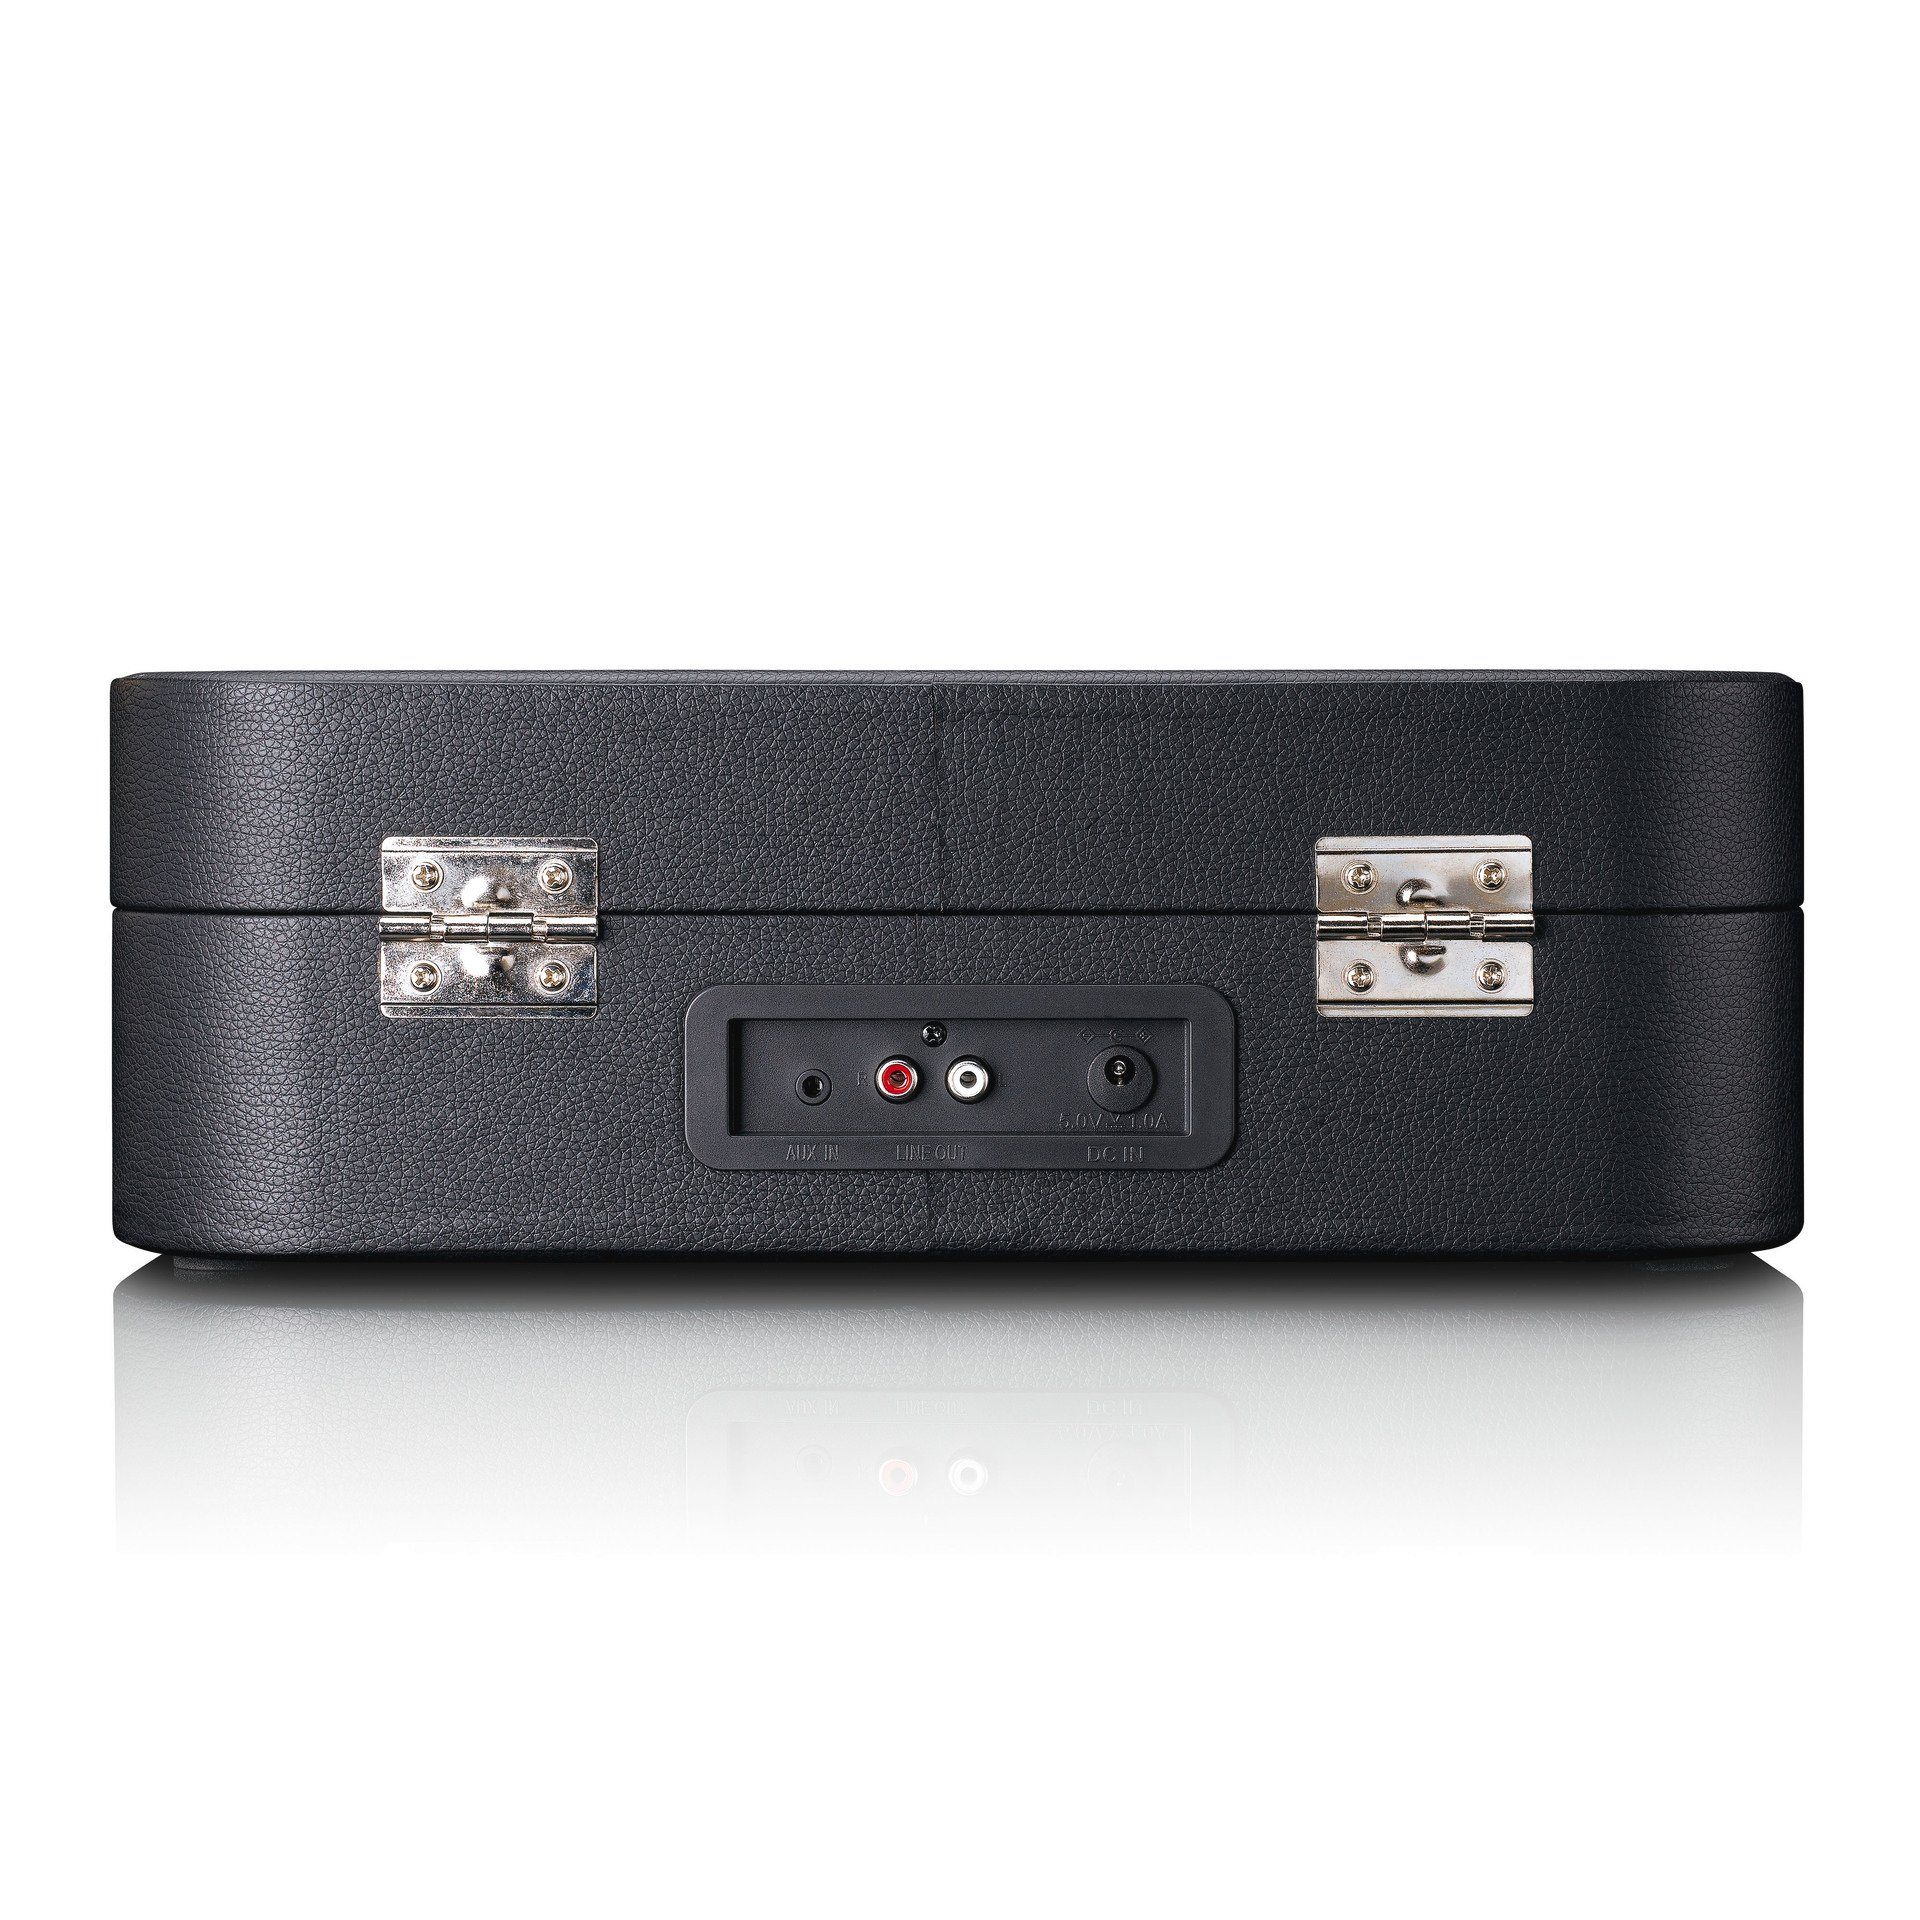 Plattenspieler und Lenco mit TT-116 Koffer-Plattenspieler Bluetooth (Bluetooth) Schwarz USB Retro-Stil